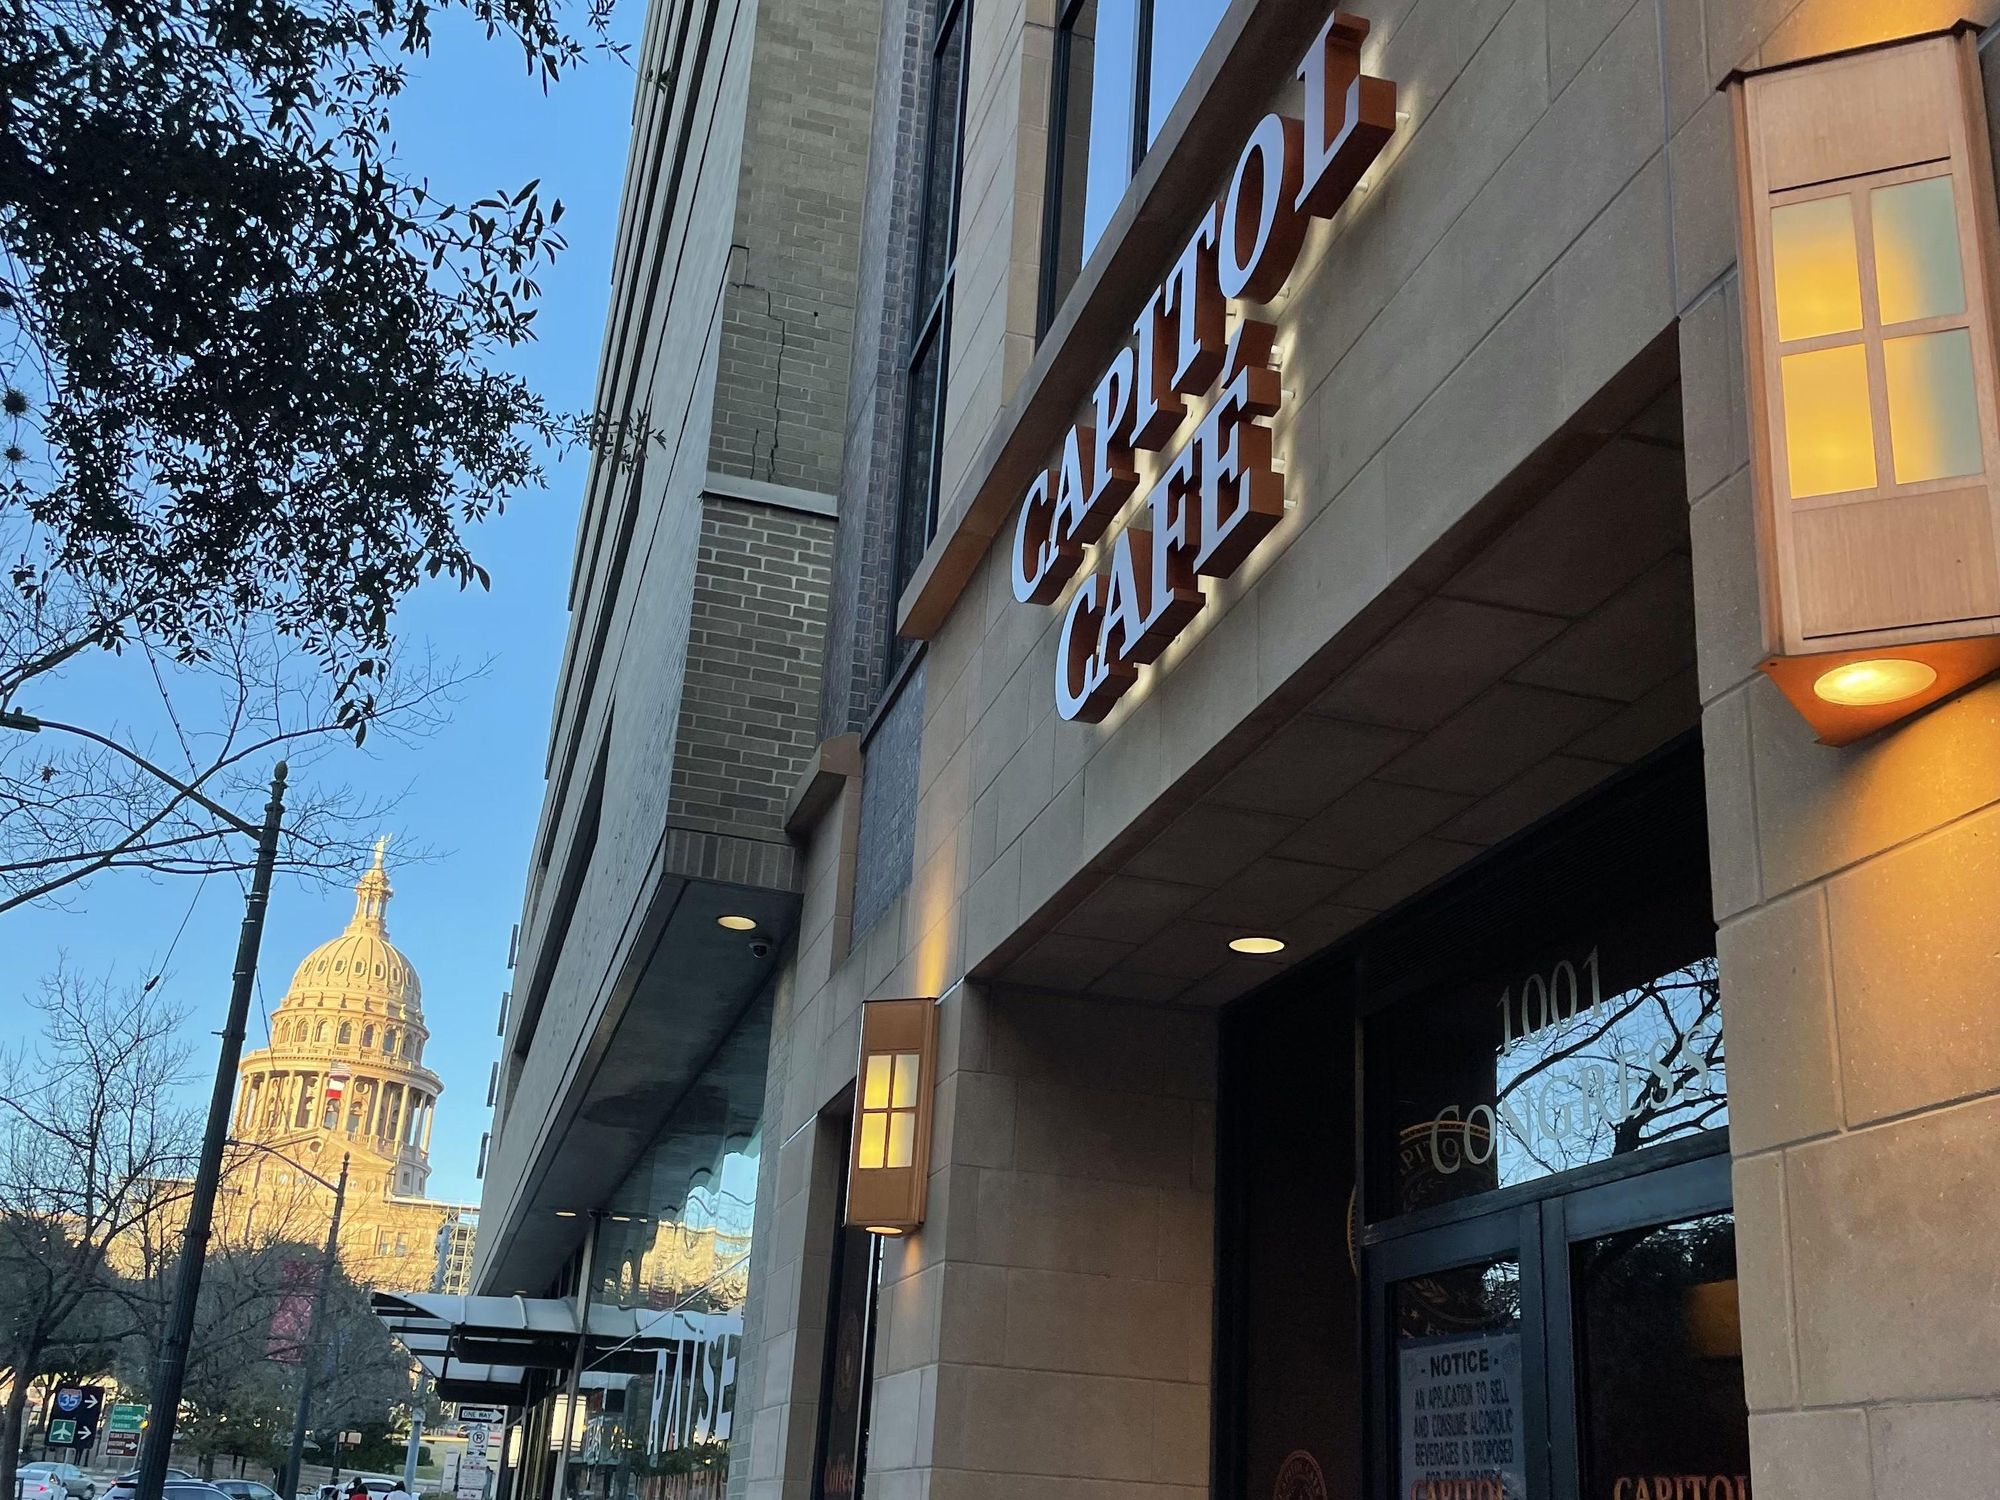 Texas capitol and Capitol Café